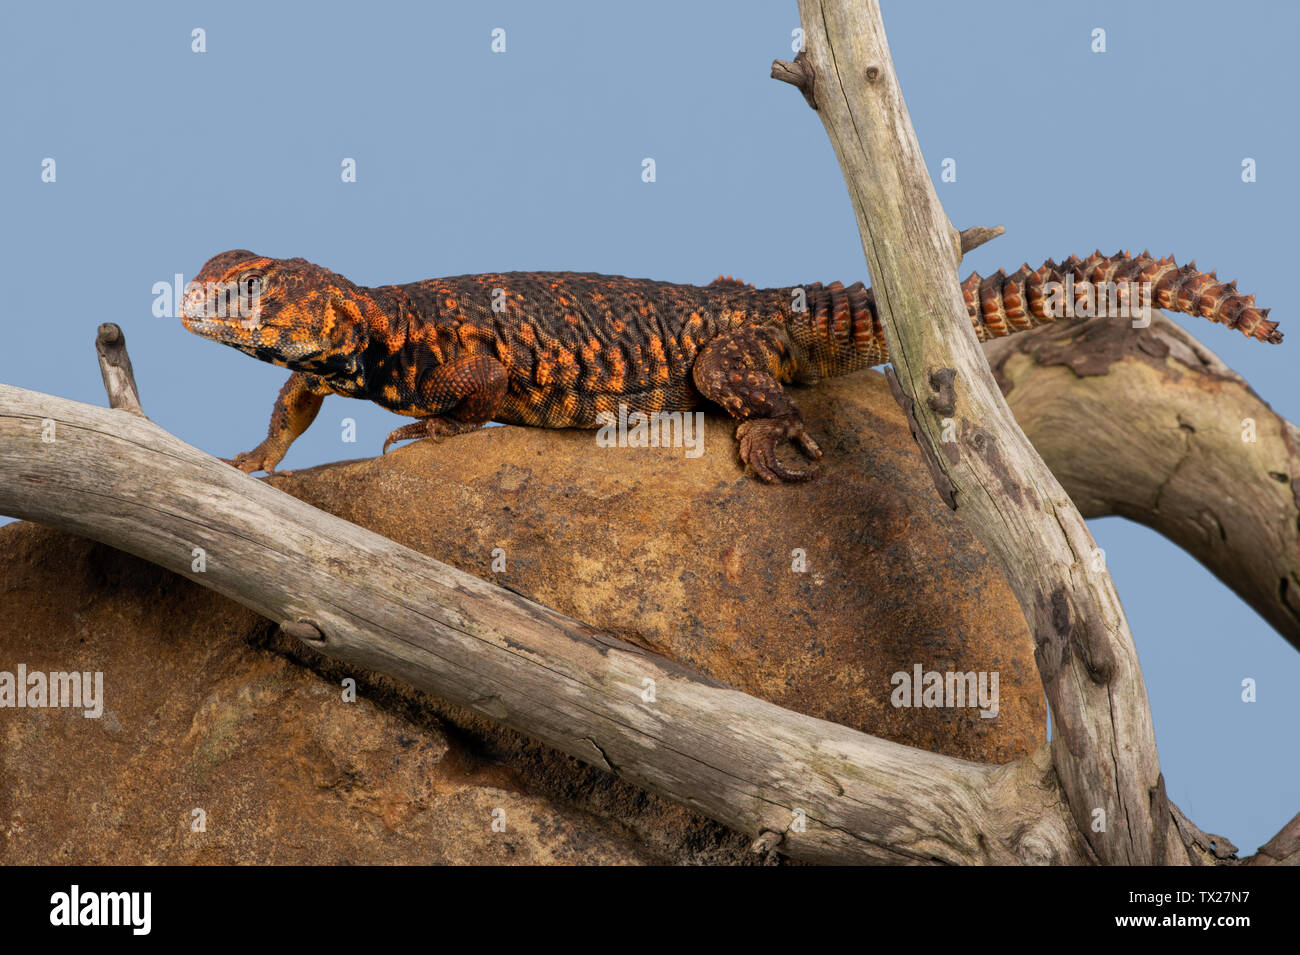 Saharan Spiny Tailed Lizard (Uromastyx Geyri) Stock Photo